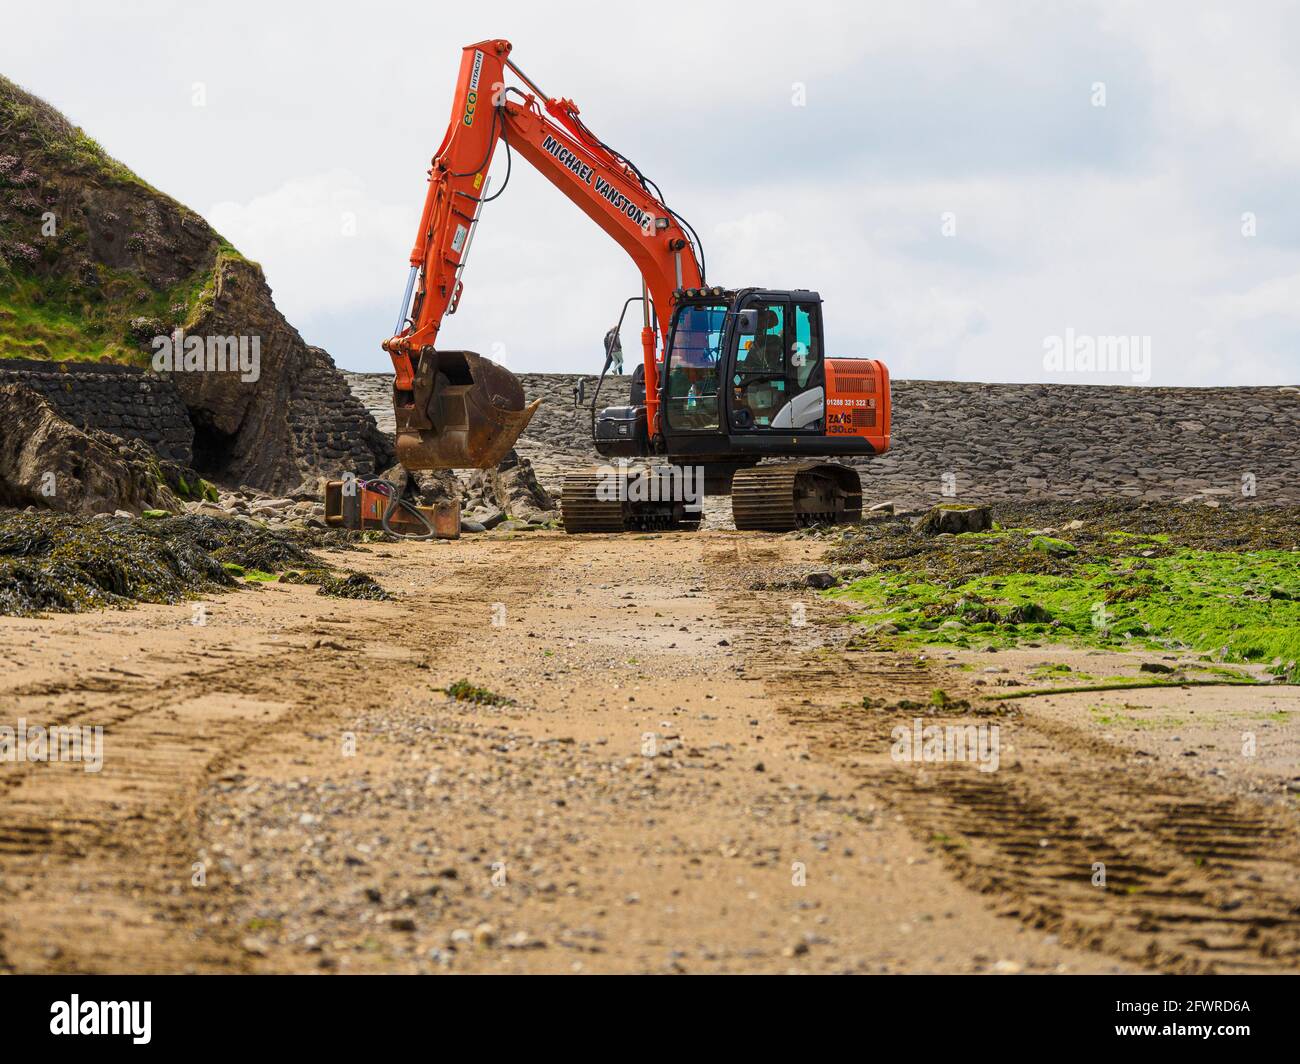 La excavadora HITACHI ZAXIS 130LCN está lista para empezar a trabajar en el puerto de Bude en marea baja, Bude, Cornwall, Reino Unido Foto de stock